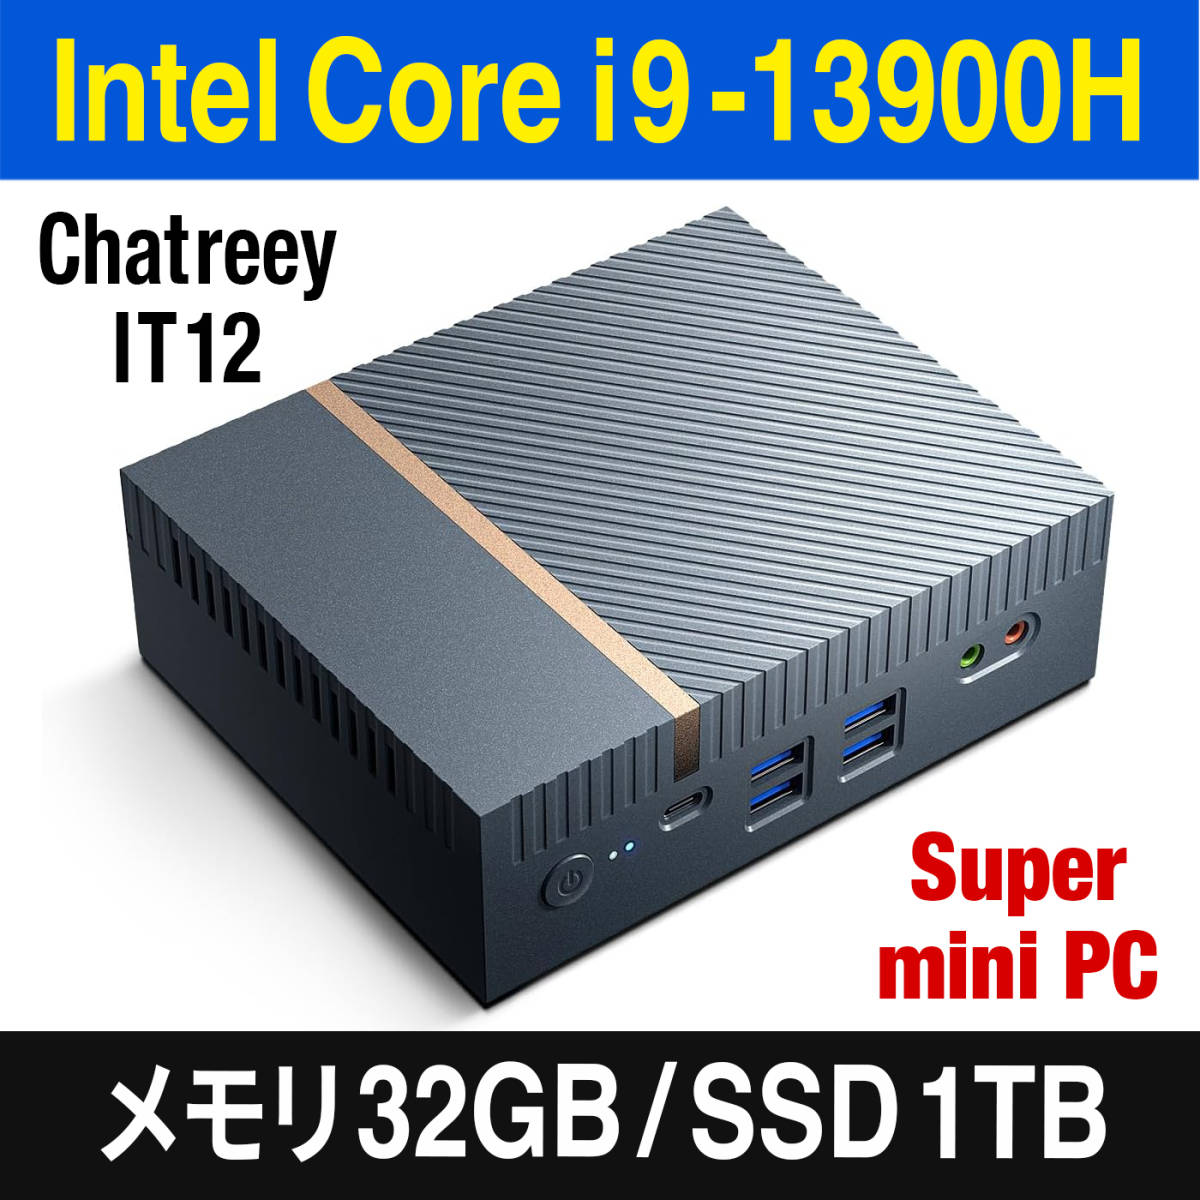 【ハイエンドmini PC】intel Core i9-13900H 搭載 Chatreey IT12/Win11 Pro/DDR5 32GB/1TB 超速SSD/Thunderbolt 4/2.5GbpsデュアルLAN_画像1